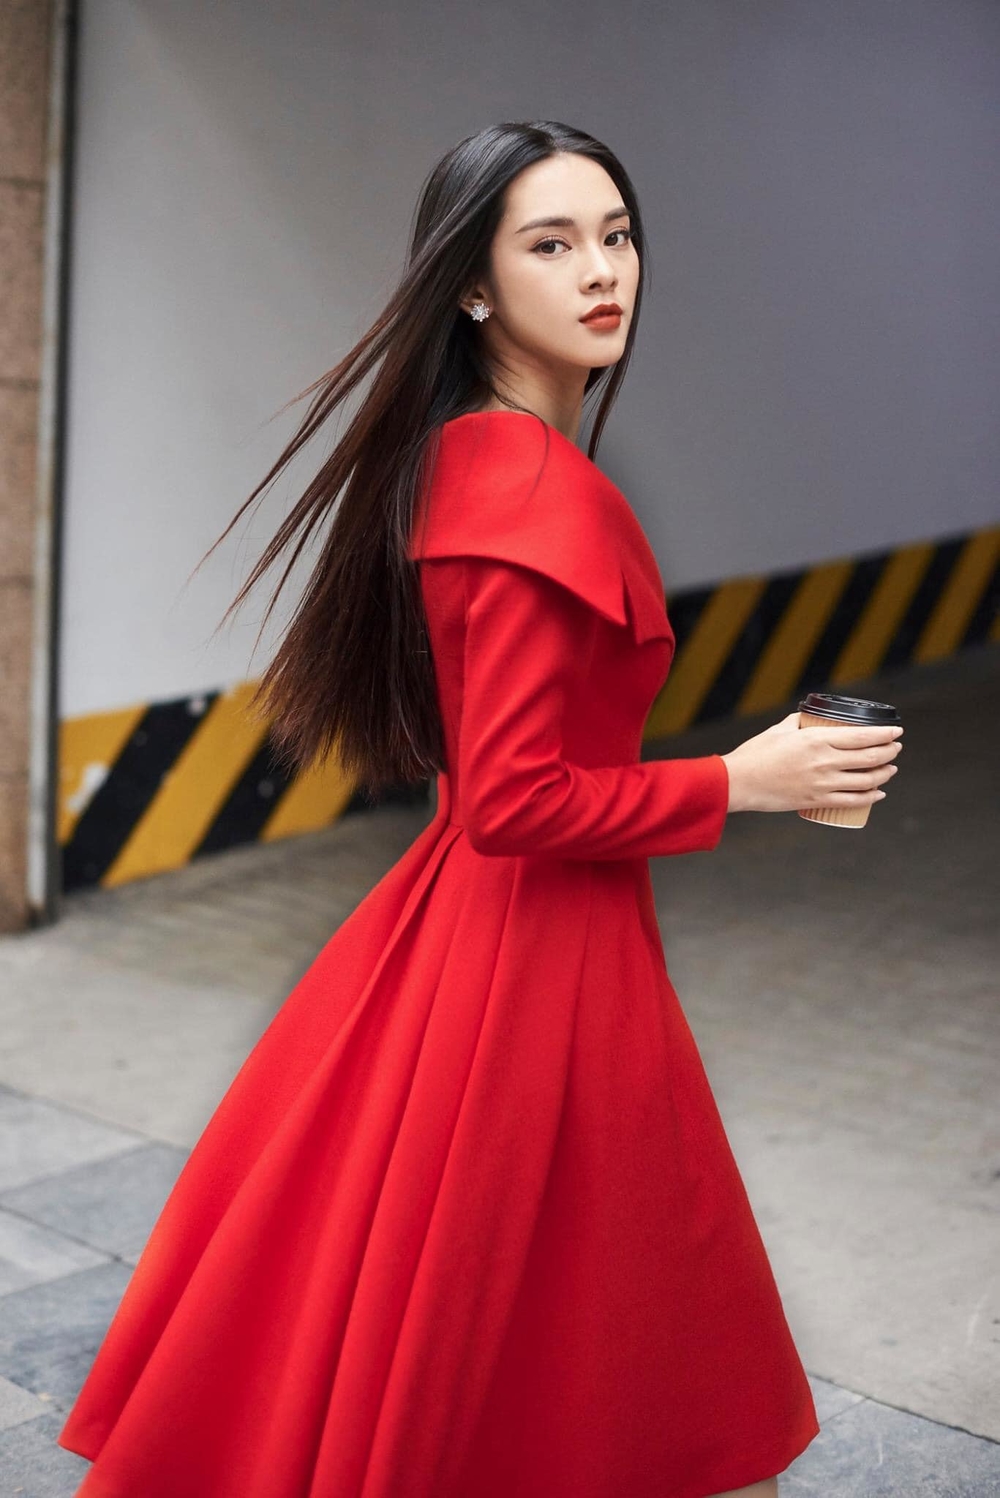  
Quỳnh Lương sở hữu gương mặt xinh đẹp, nhiều người nhận xét cô có nét giống Chi Pu